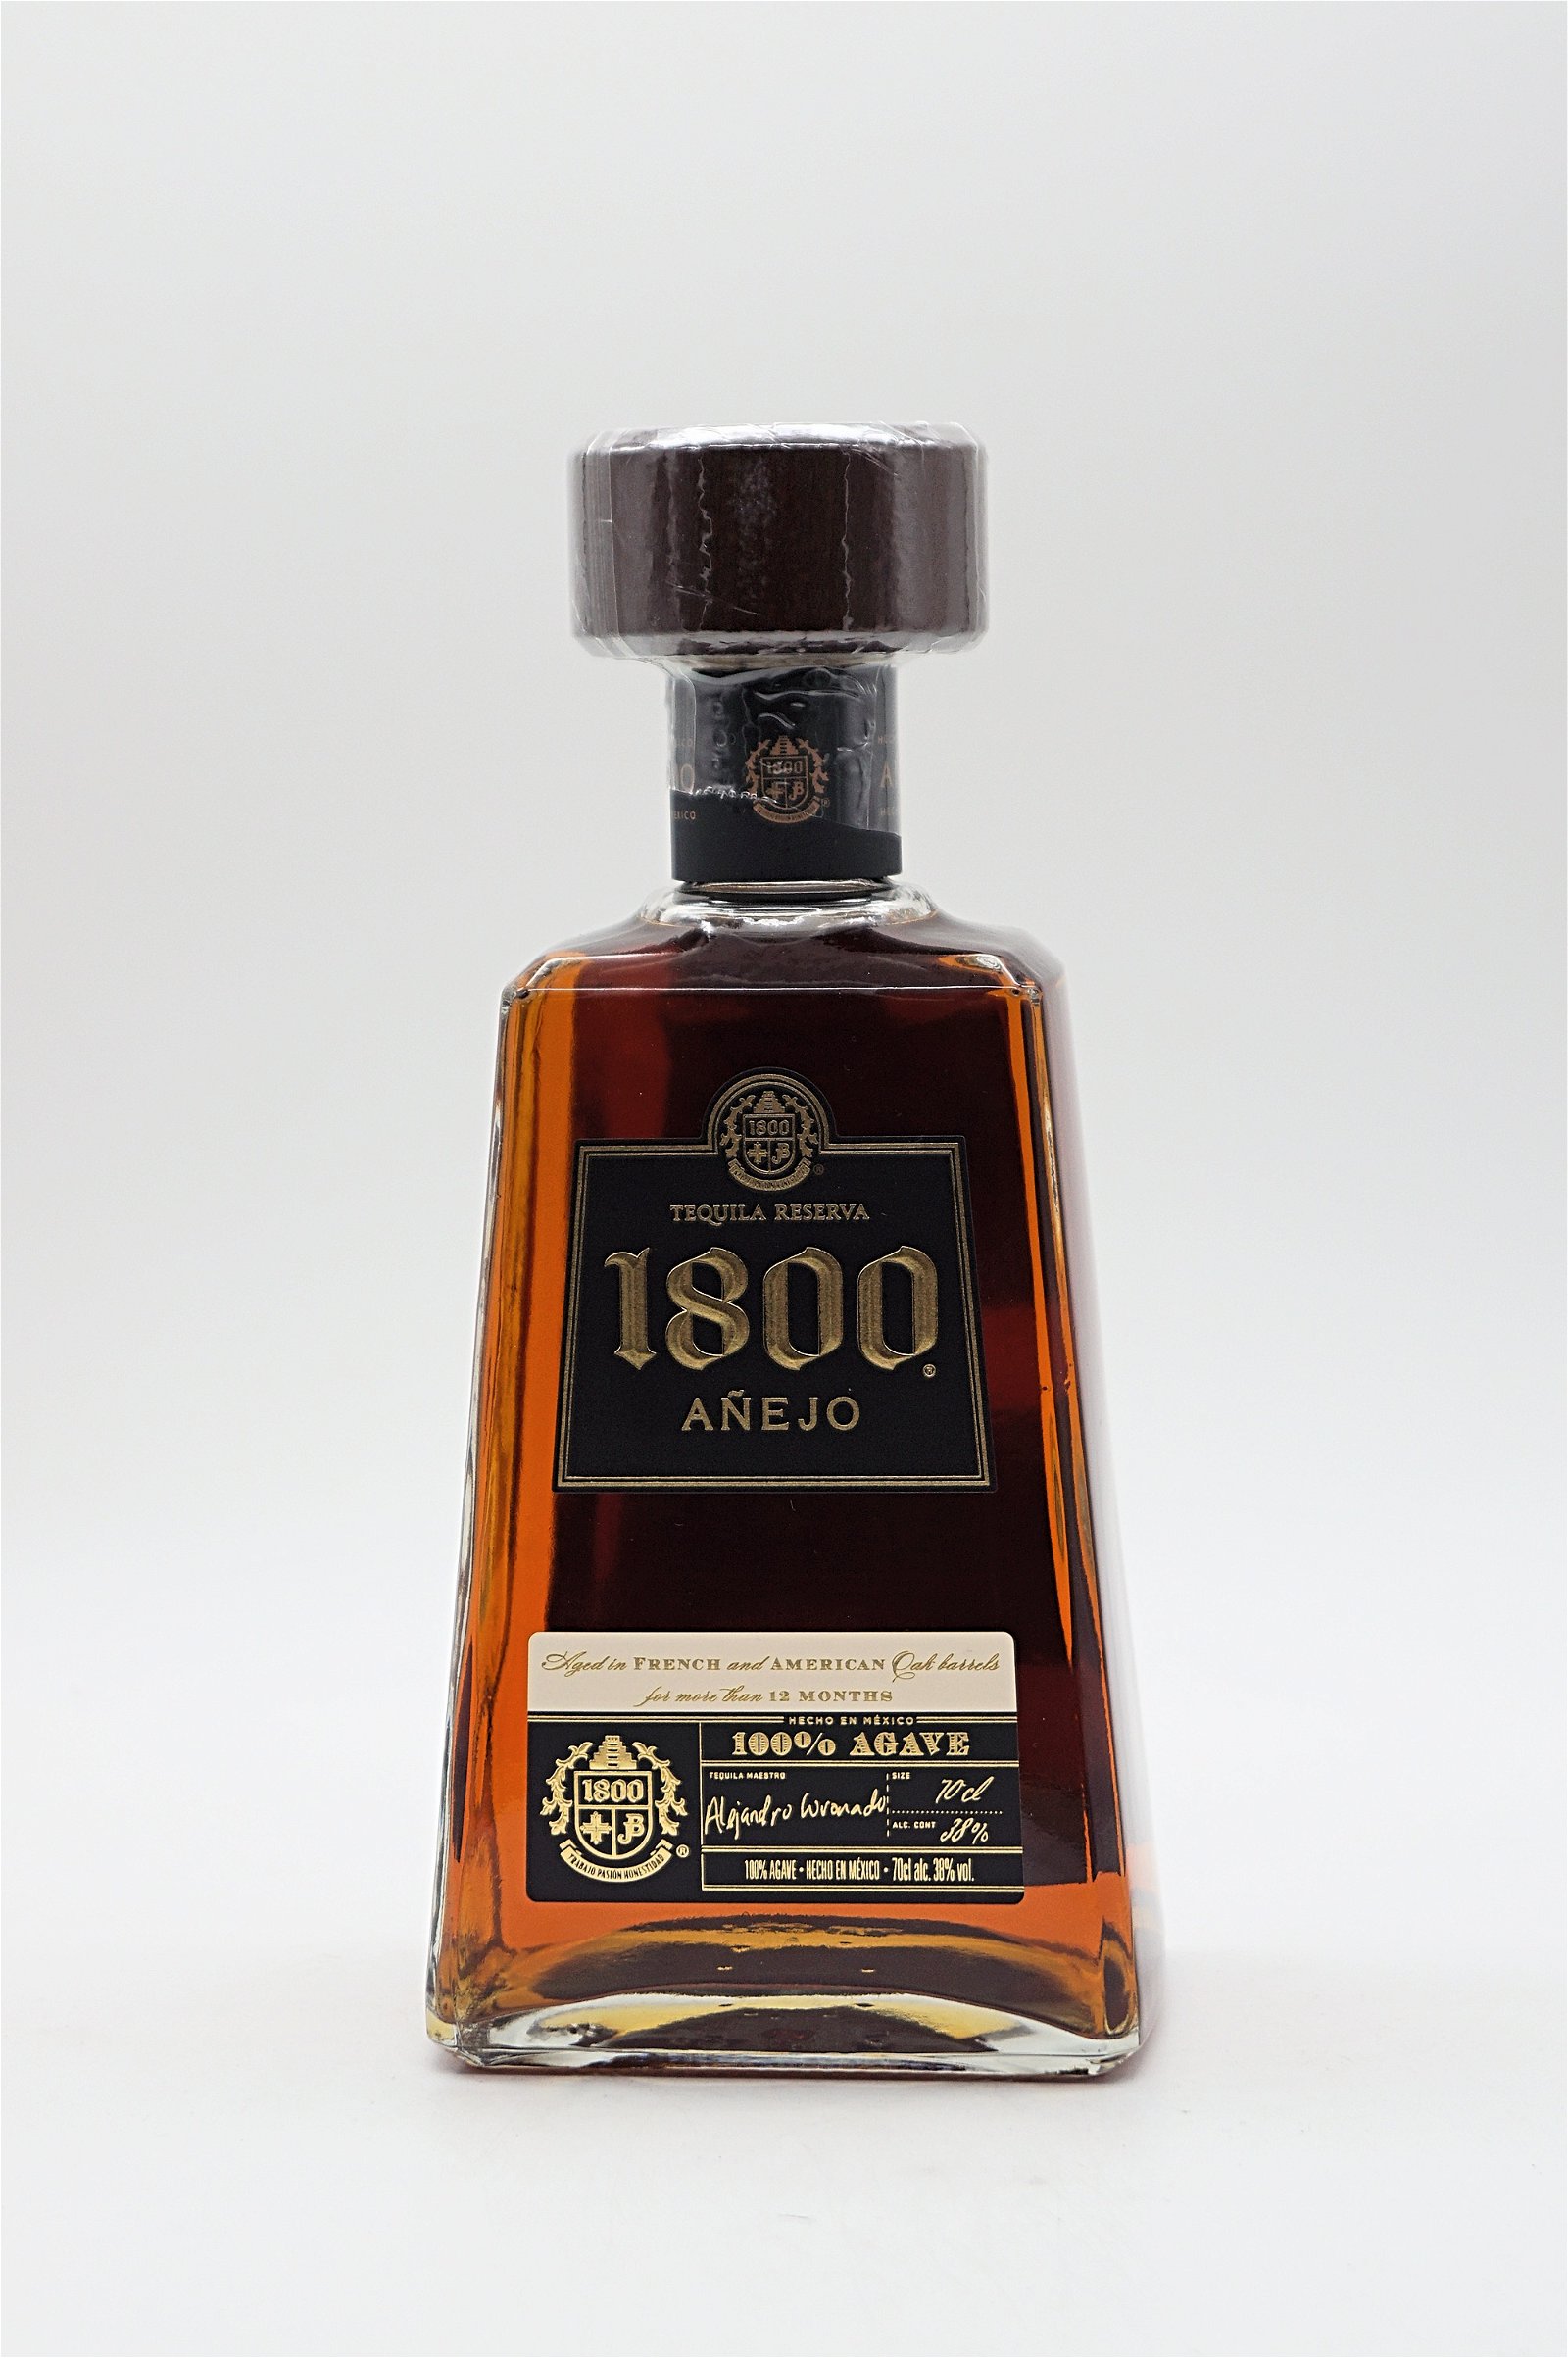 1800 Anejo Tequila Reserva 